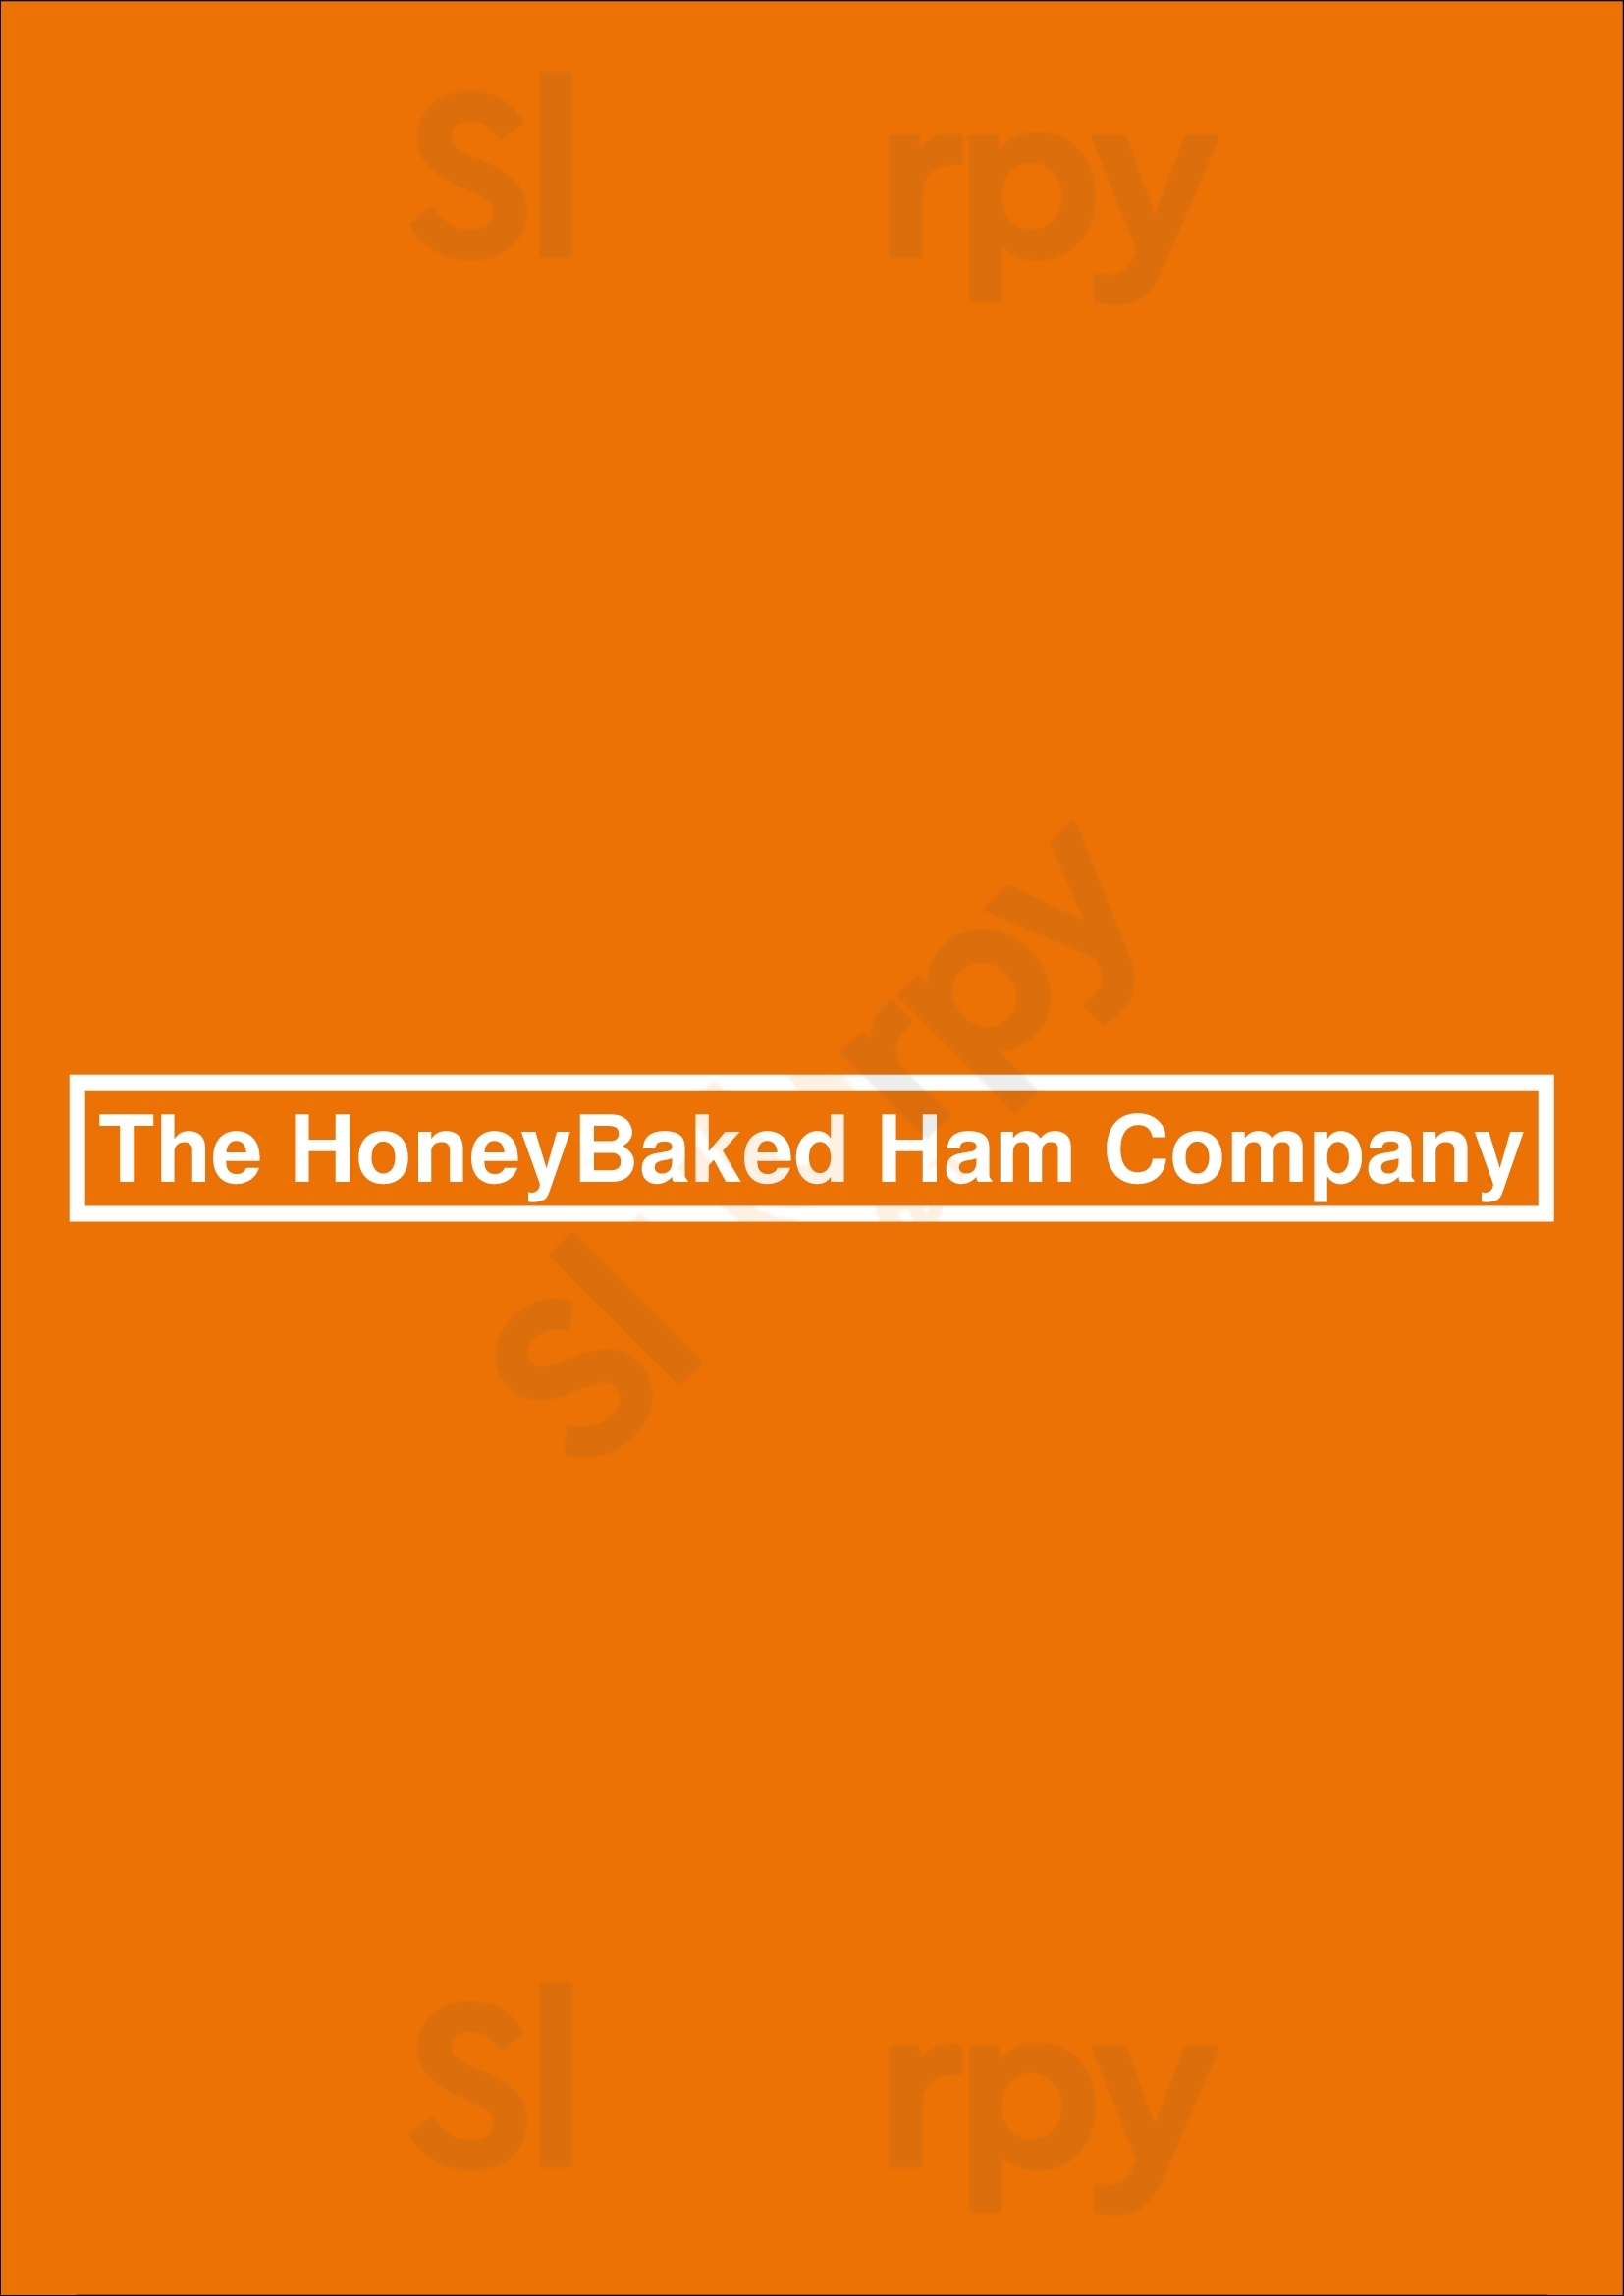 The Honey Baked Ham Company Dallas Menu - 1